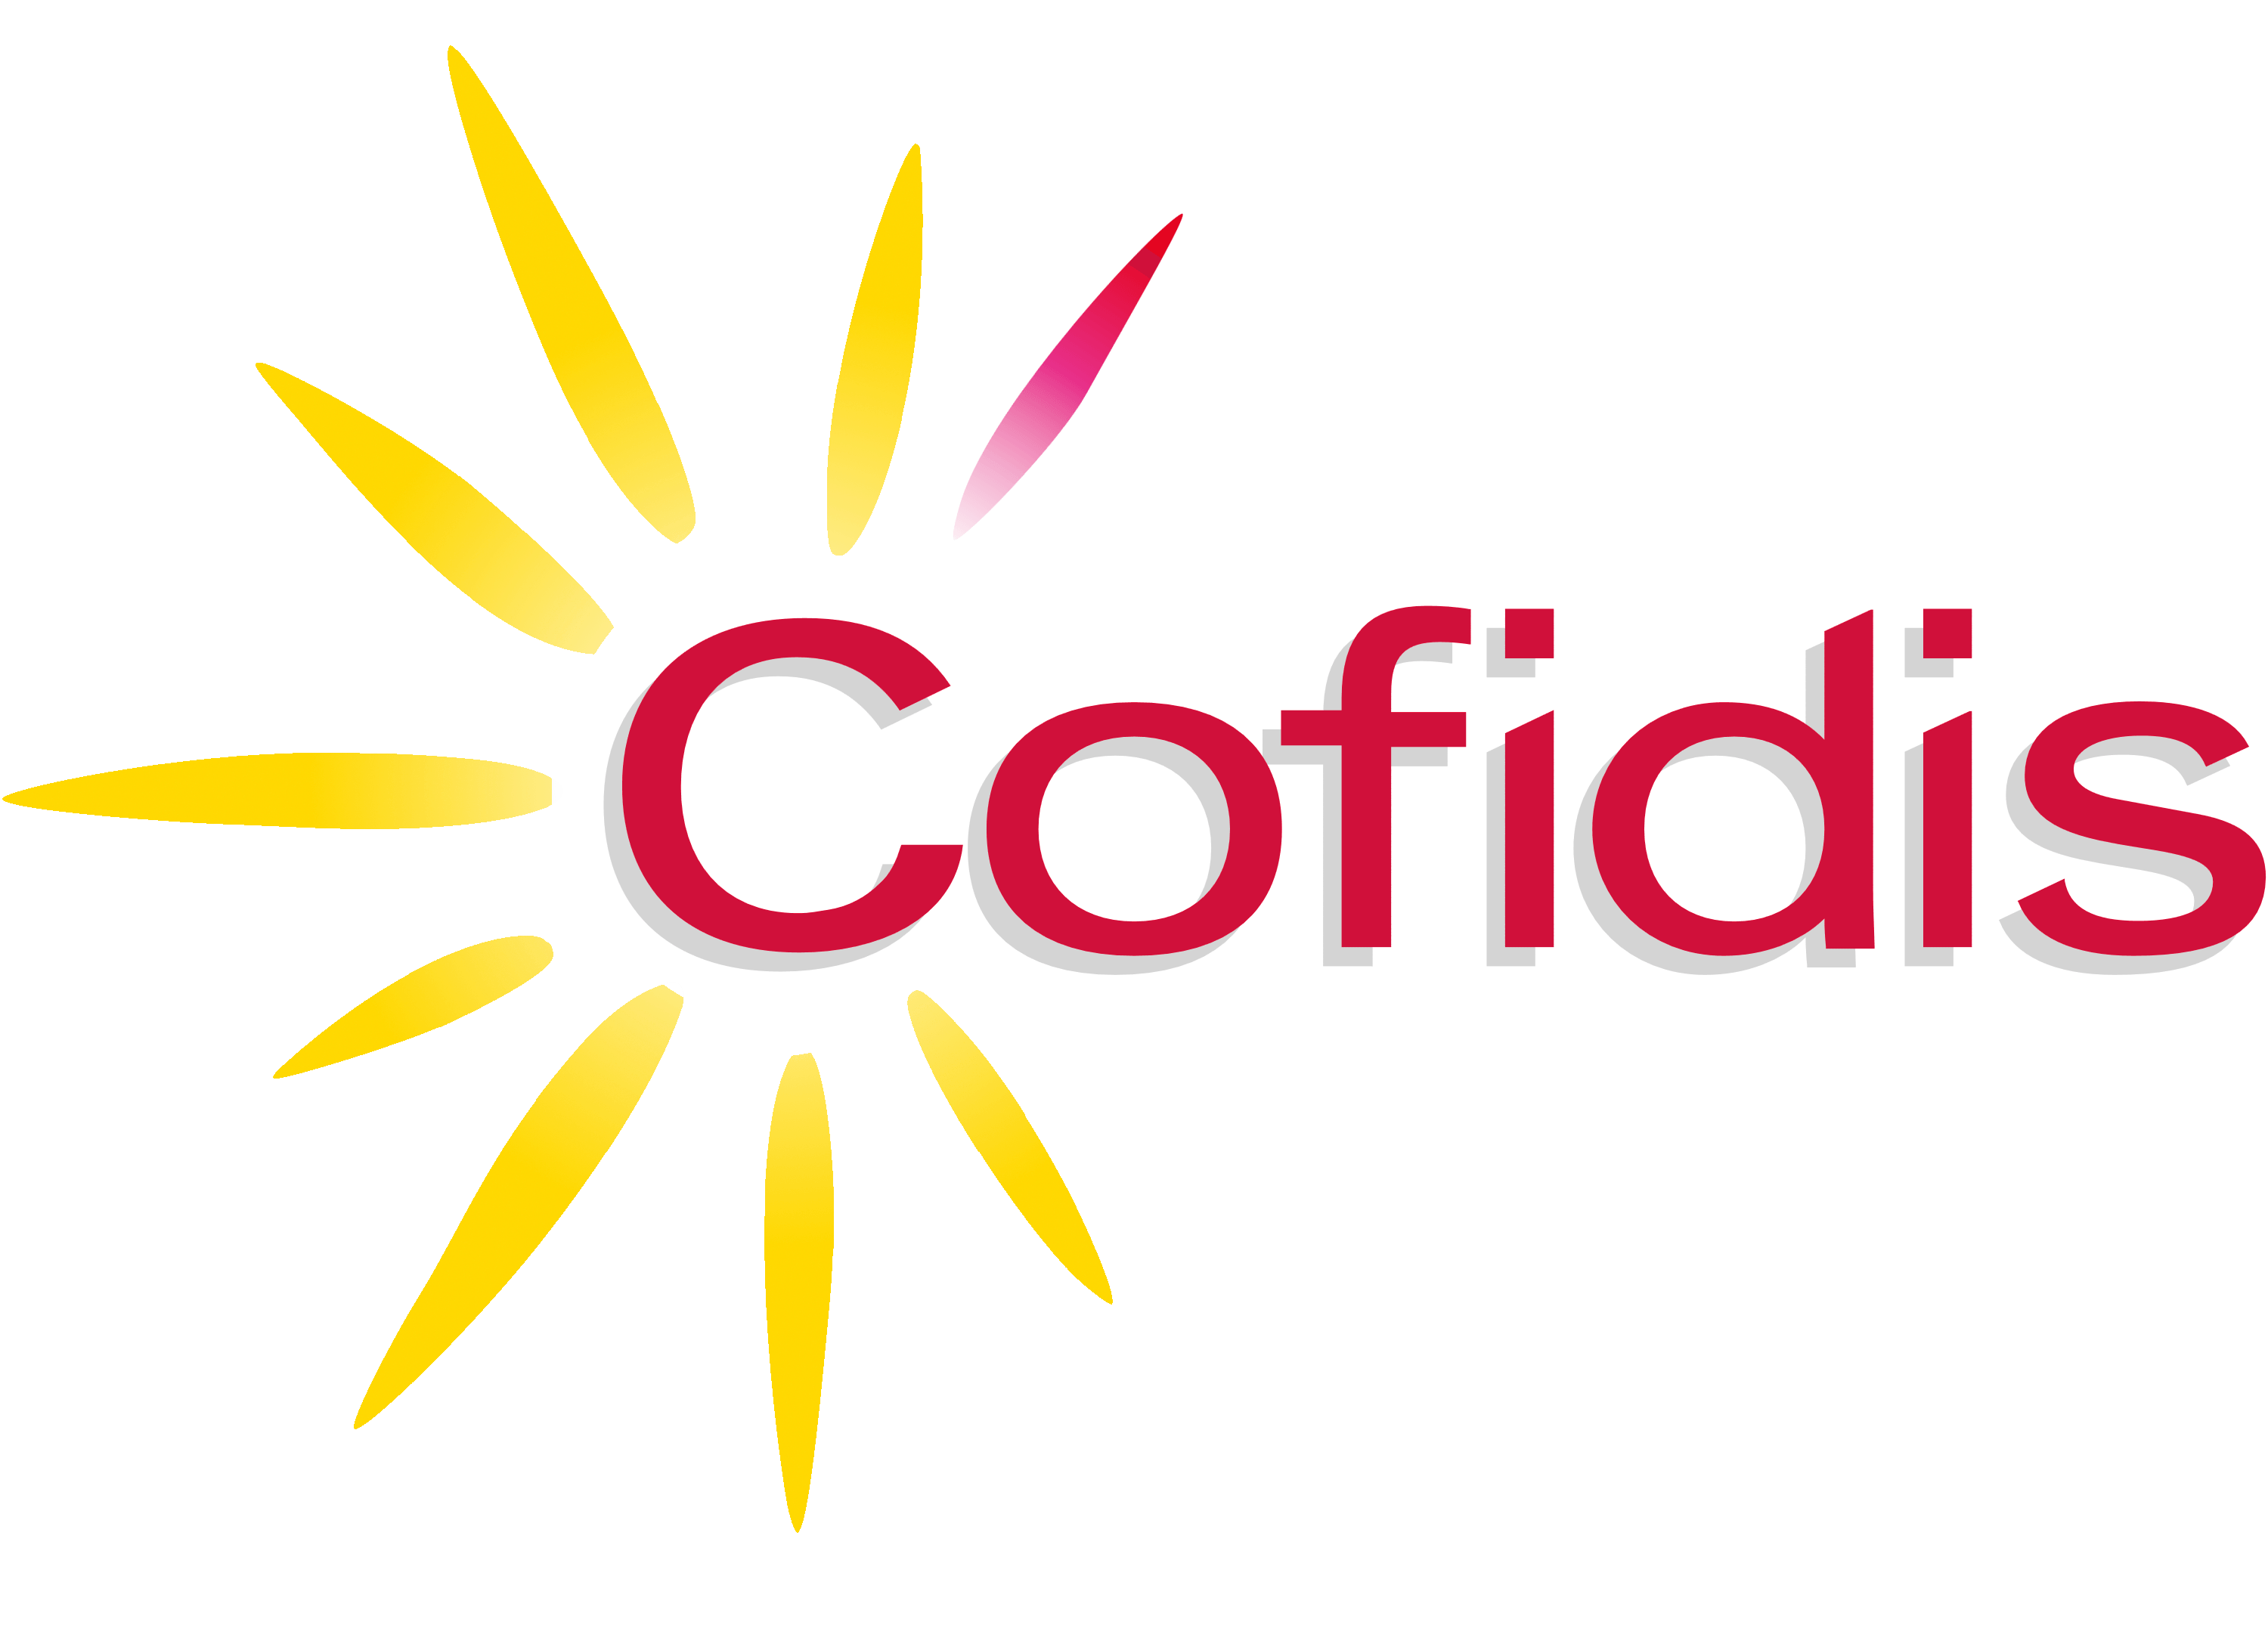 Cofidis logo, logotype